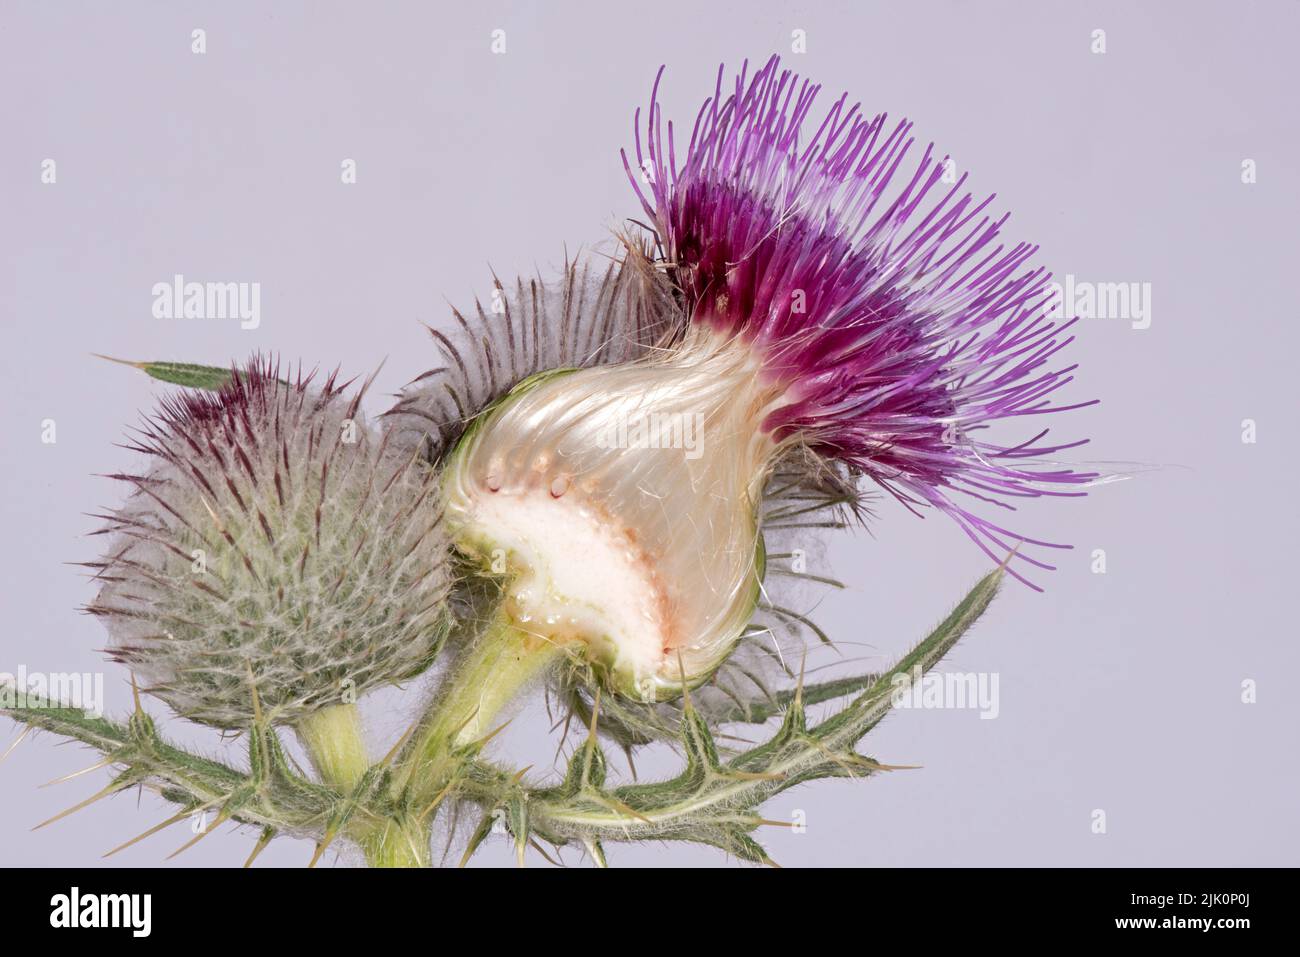 Corte de cardo lanoso (Cirsium eriophorum) a través de una flor con floretes de disco púrpura, cabeza redonda, aquenes en desarrollo, receptáculo y pappus Foto de stock